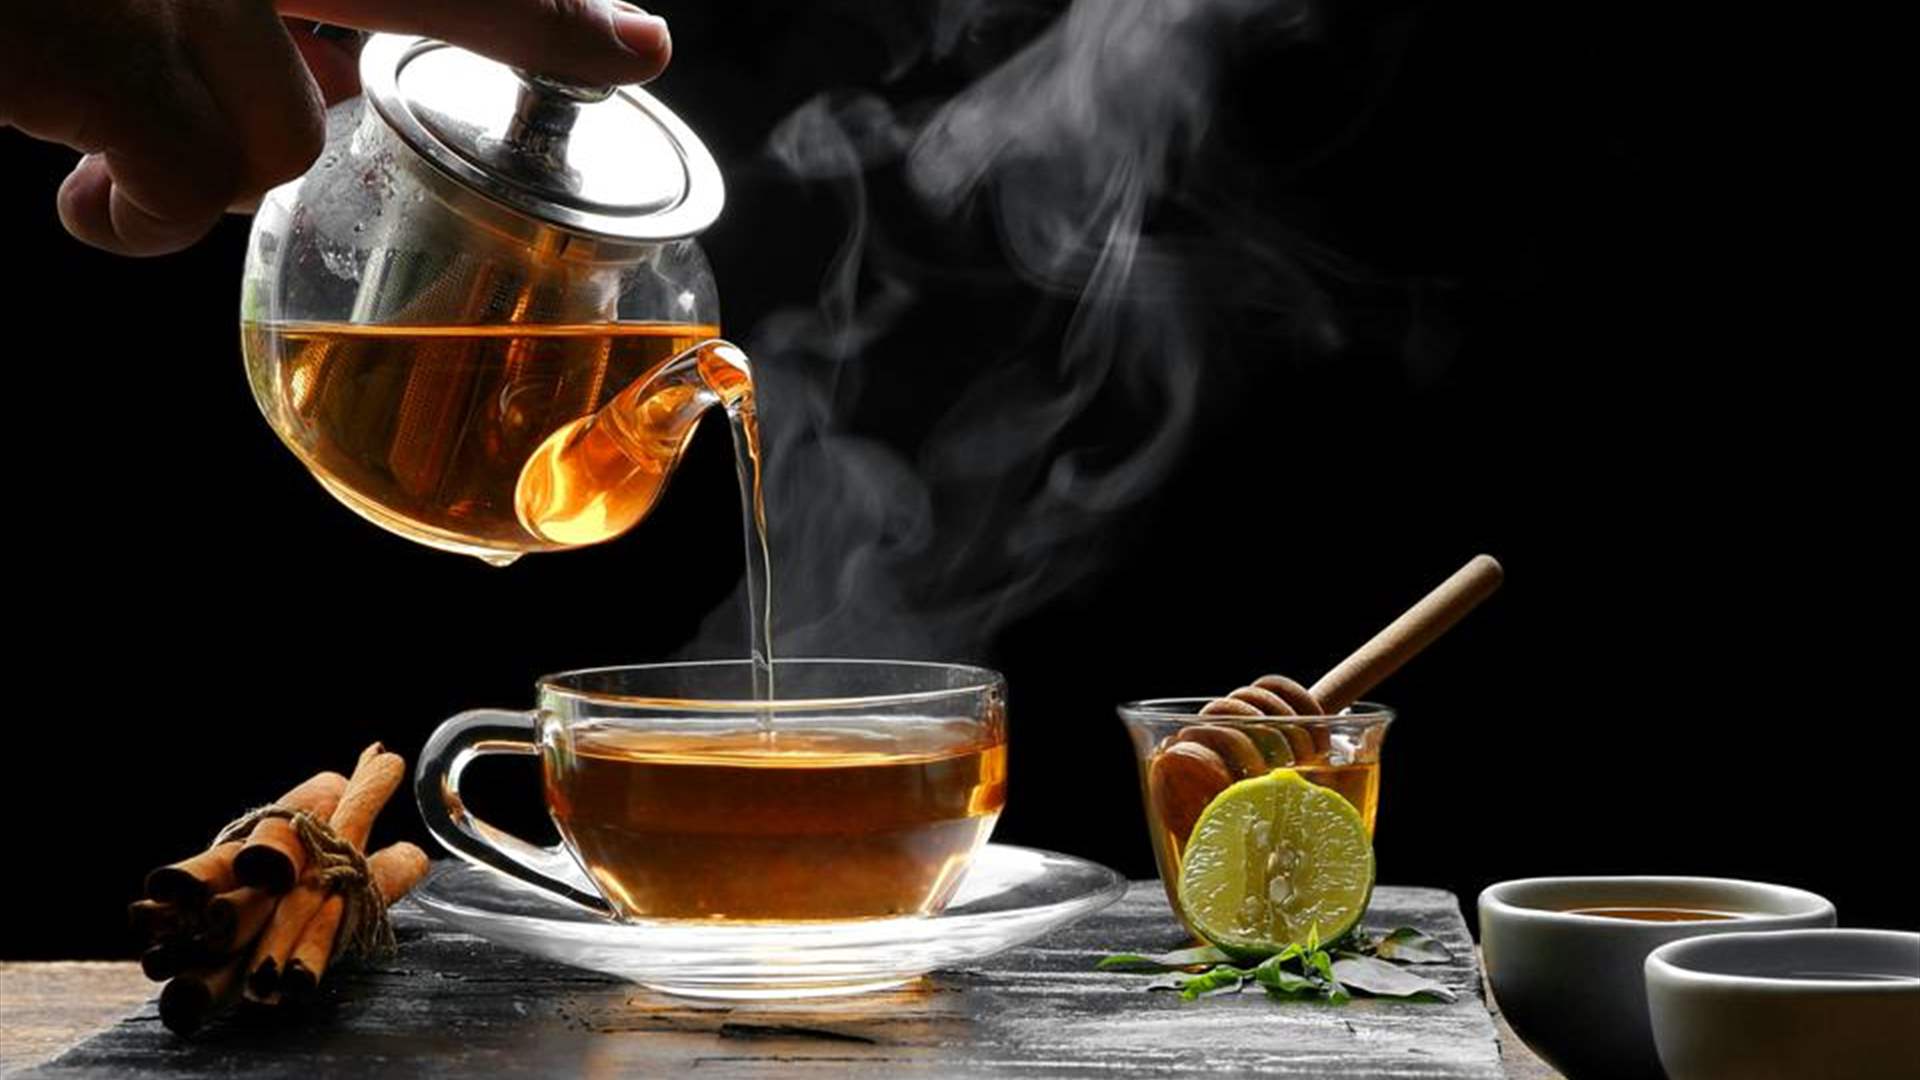 اكتشفوا الفوائد العديدة لشرب الشاي...سوف تنبهرون!